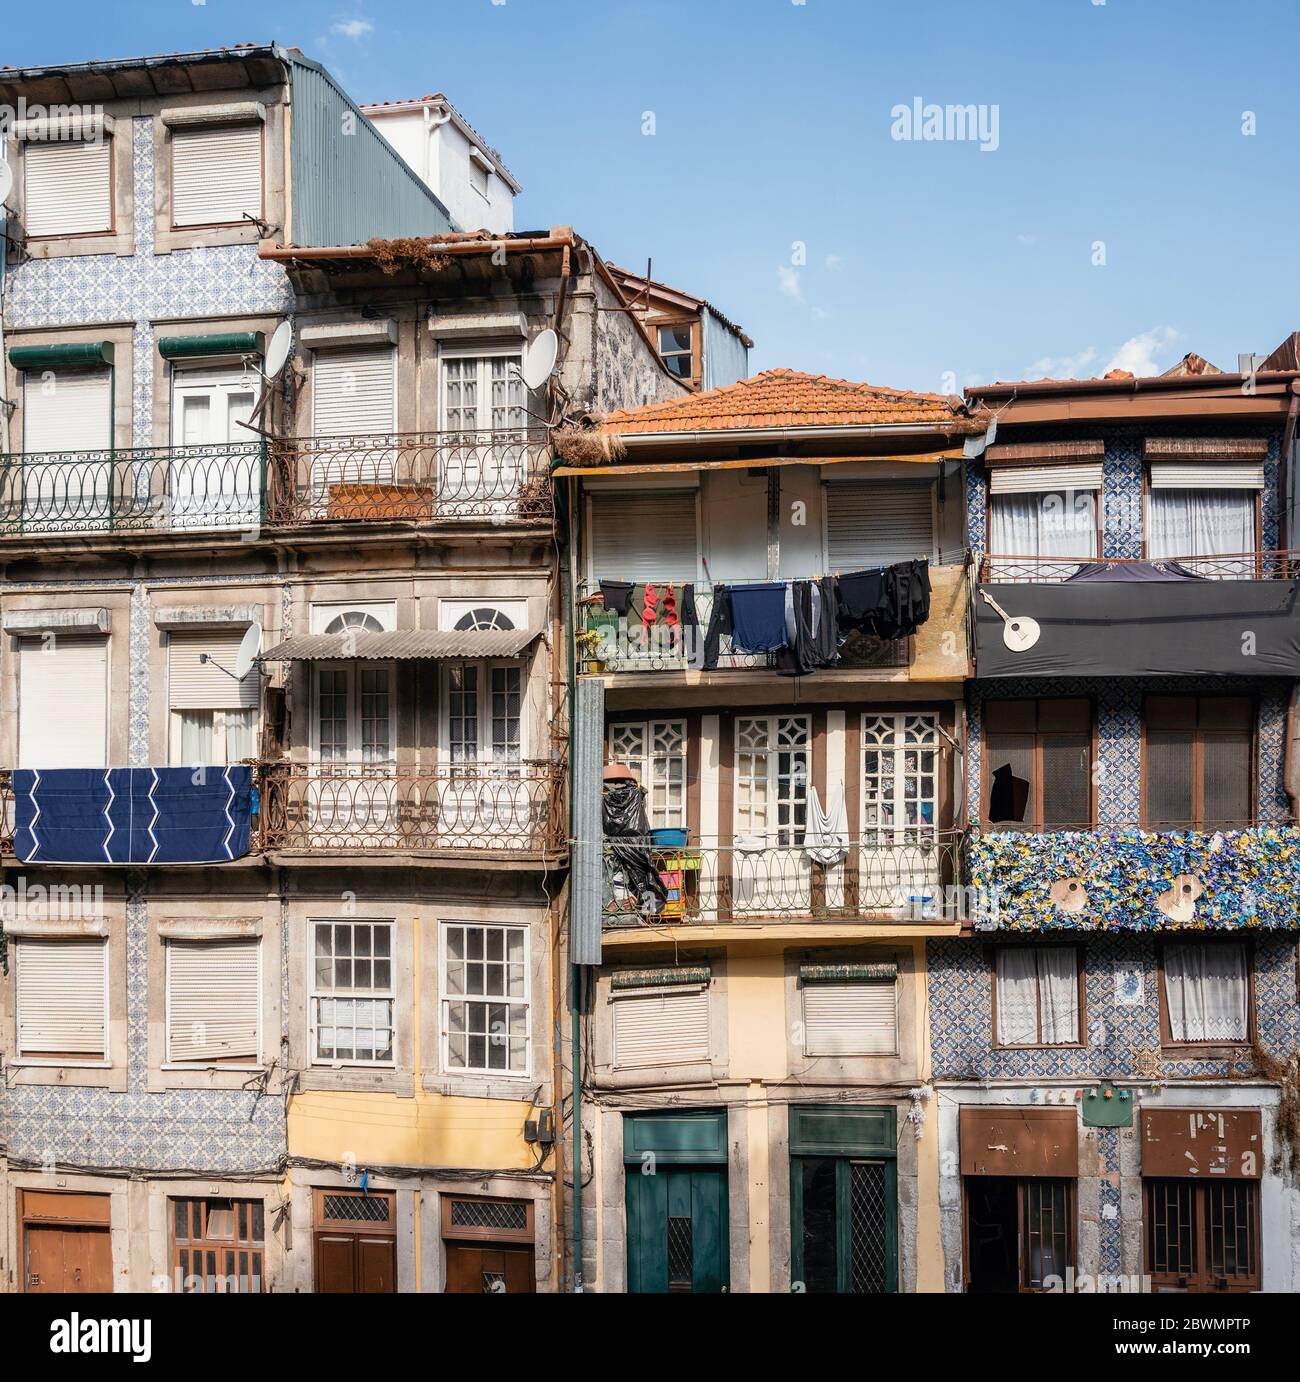 Barandales de barandilla de balcón de acero de edificios de apartamentos